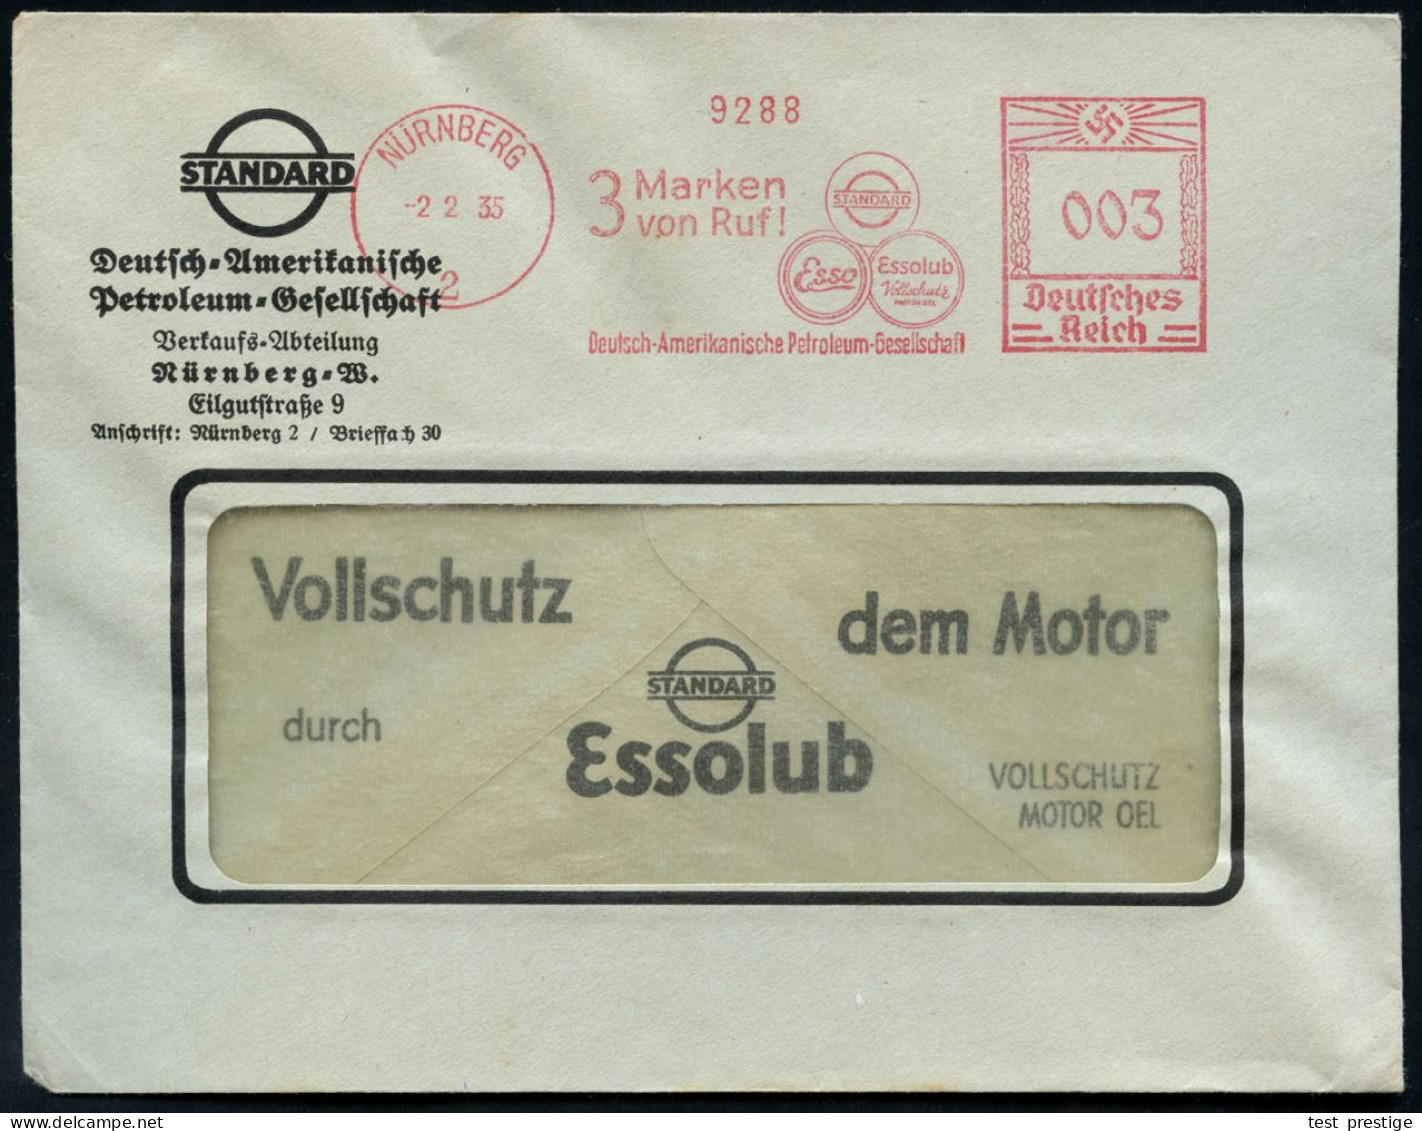 NÜRNBERG/ 2/ 3 Marken/ Von Ruf!/ STANDARD/ Esso/ Essolub/ Deutsch-Amerikanische Petroleum-Ges. 1935 (2.2.) AFS Francotyp - Petróleo